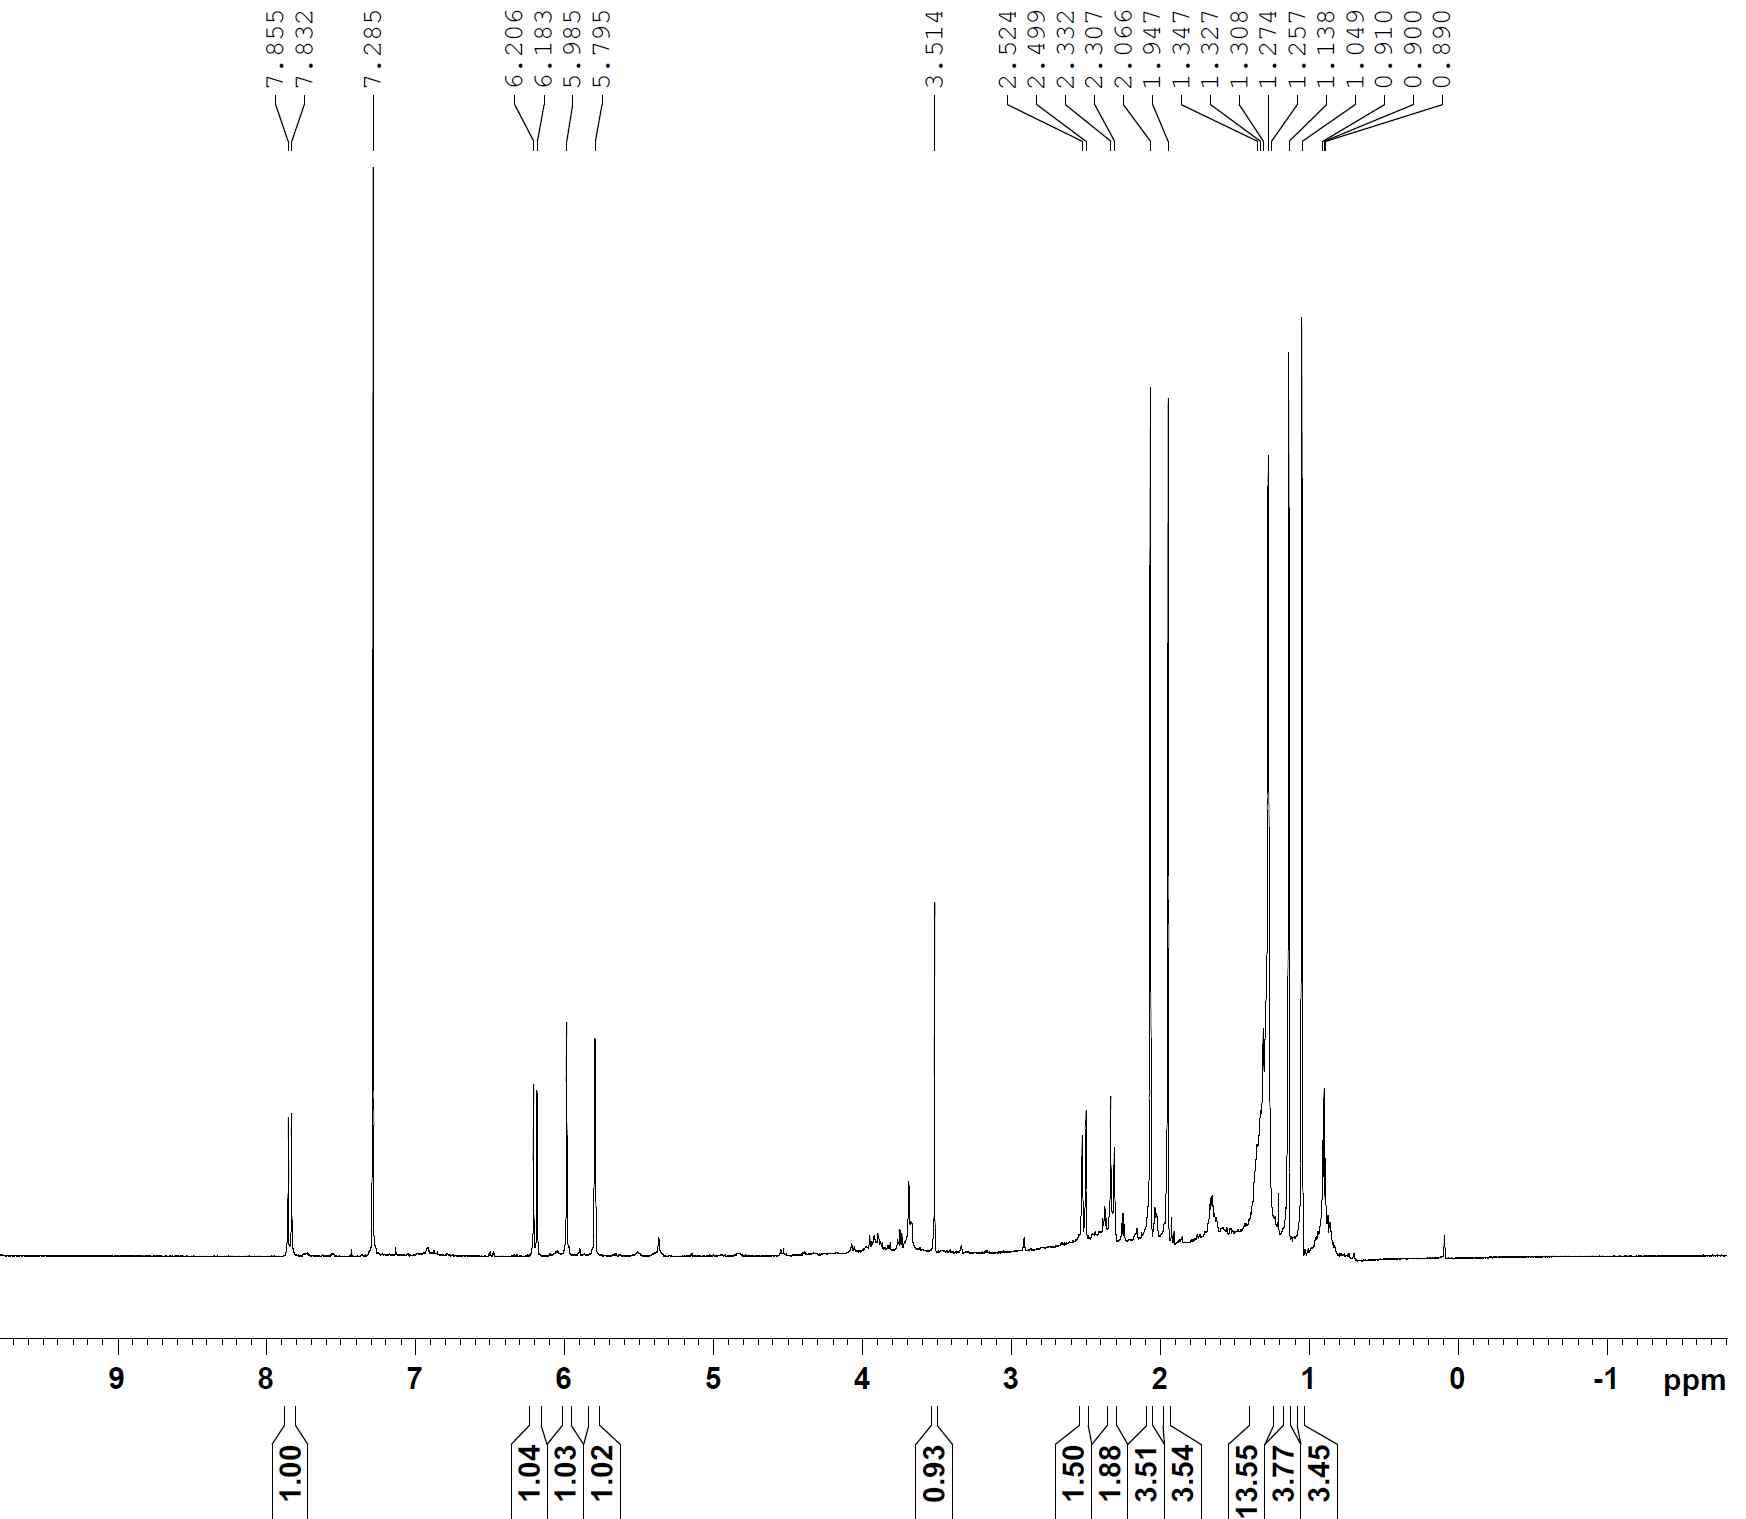 1H-NMR spectrum of compound 14